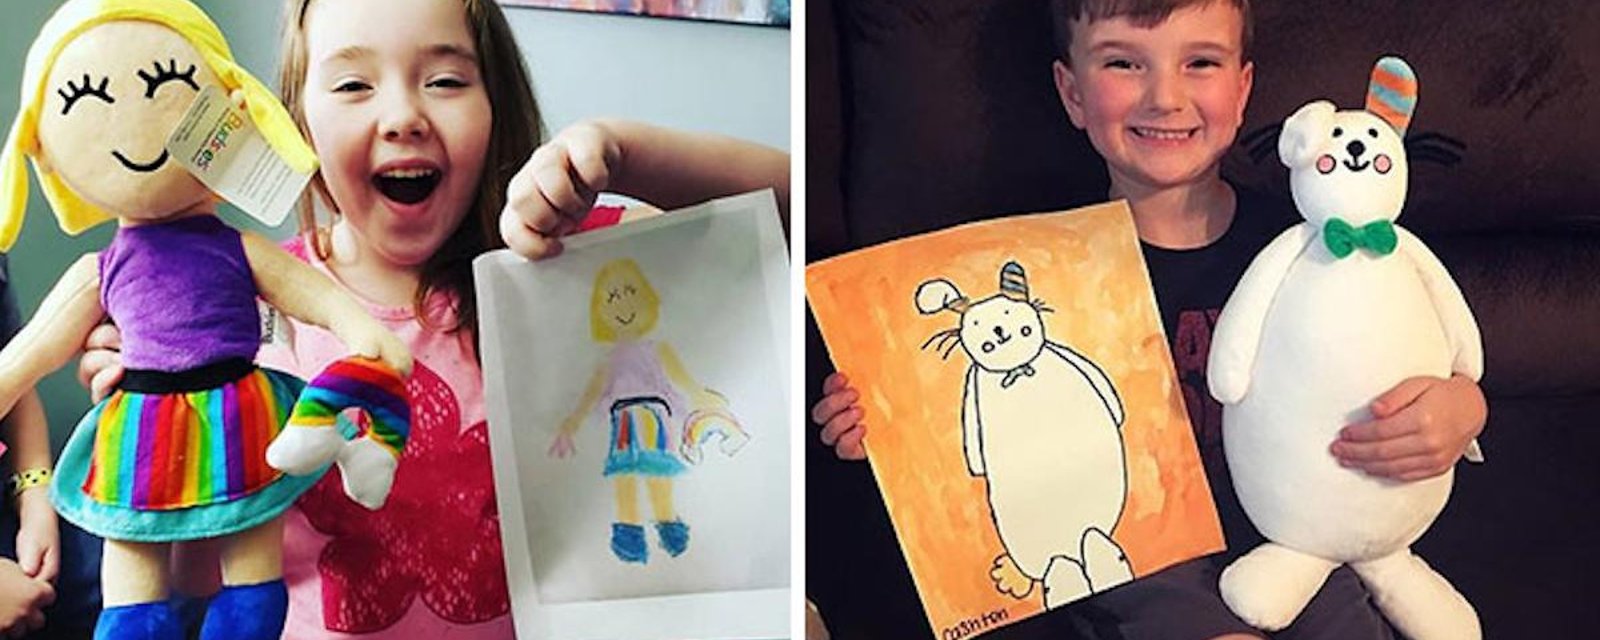 Idée cadeau: une peluche réalisée à partir d'un dessin de votre enfant!